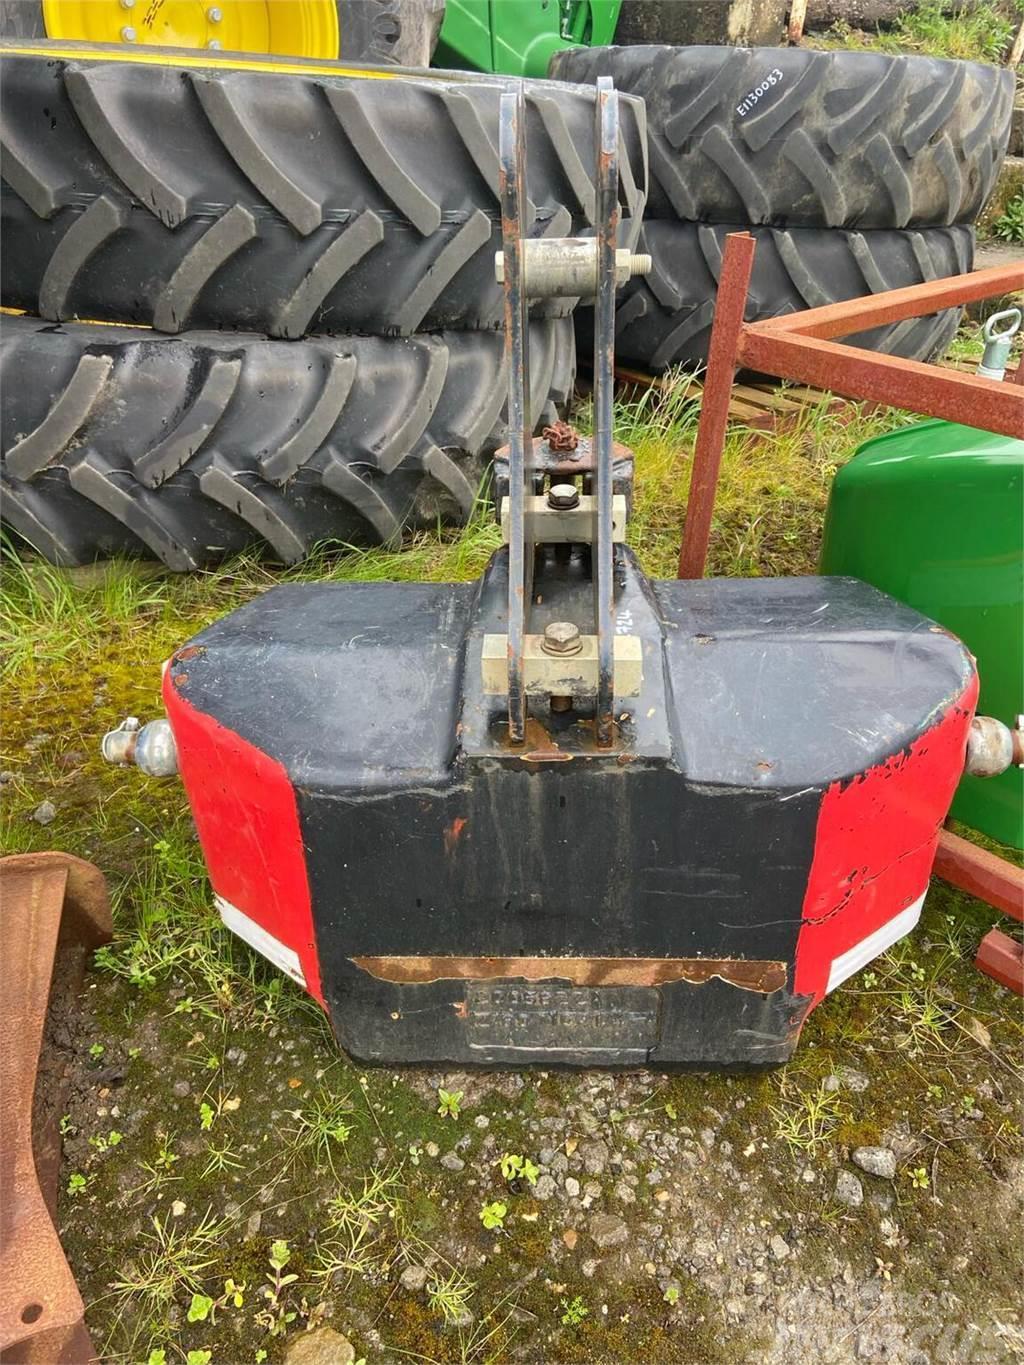 Zuidberg 900KG Weight Інше додаткове обладнання для тракторів